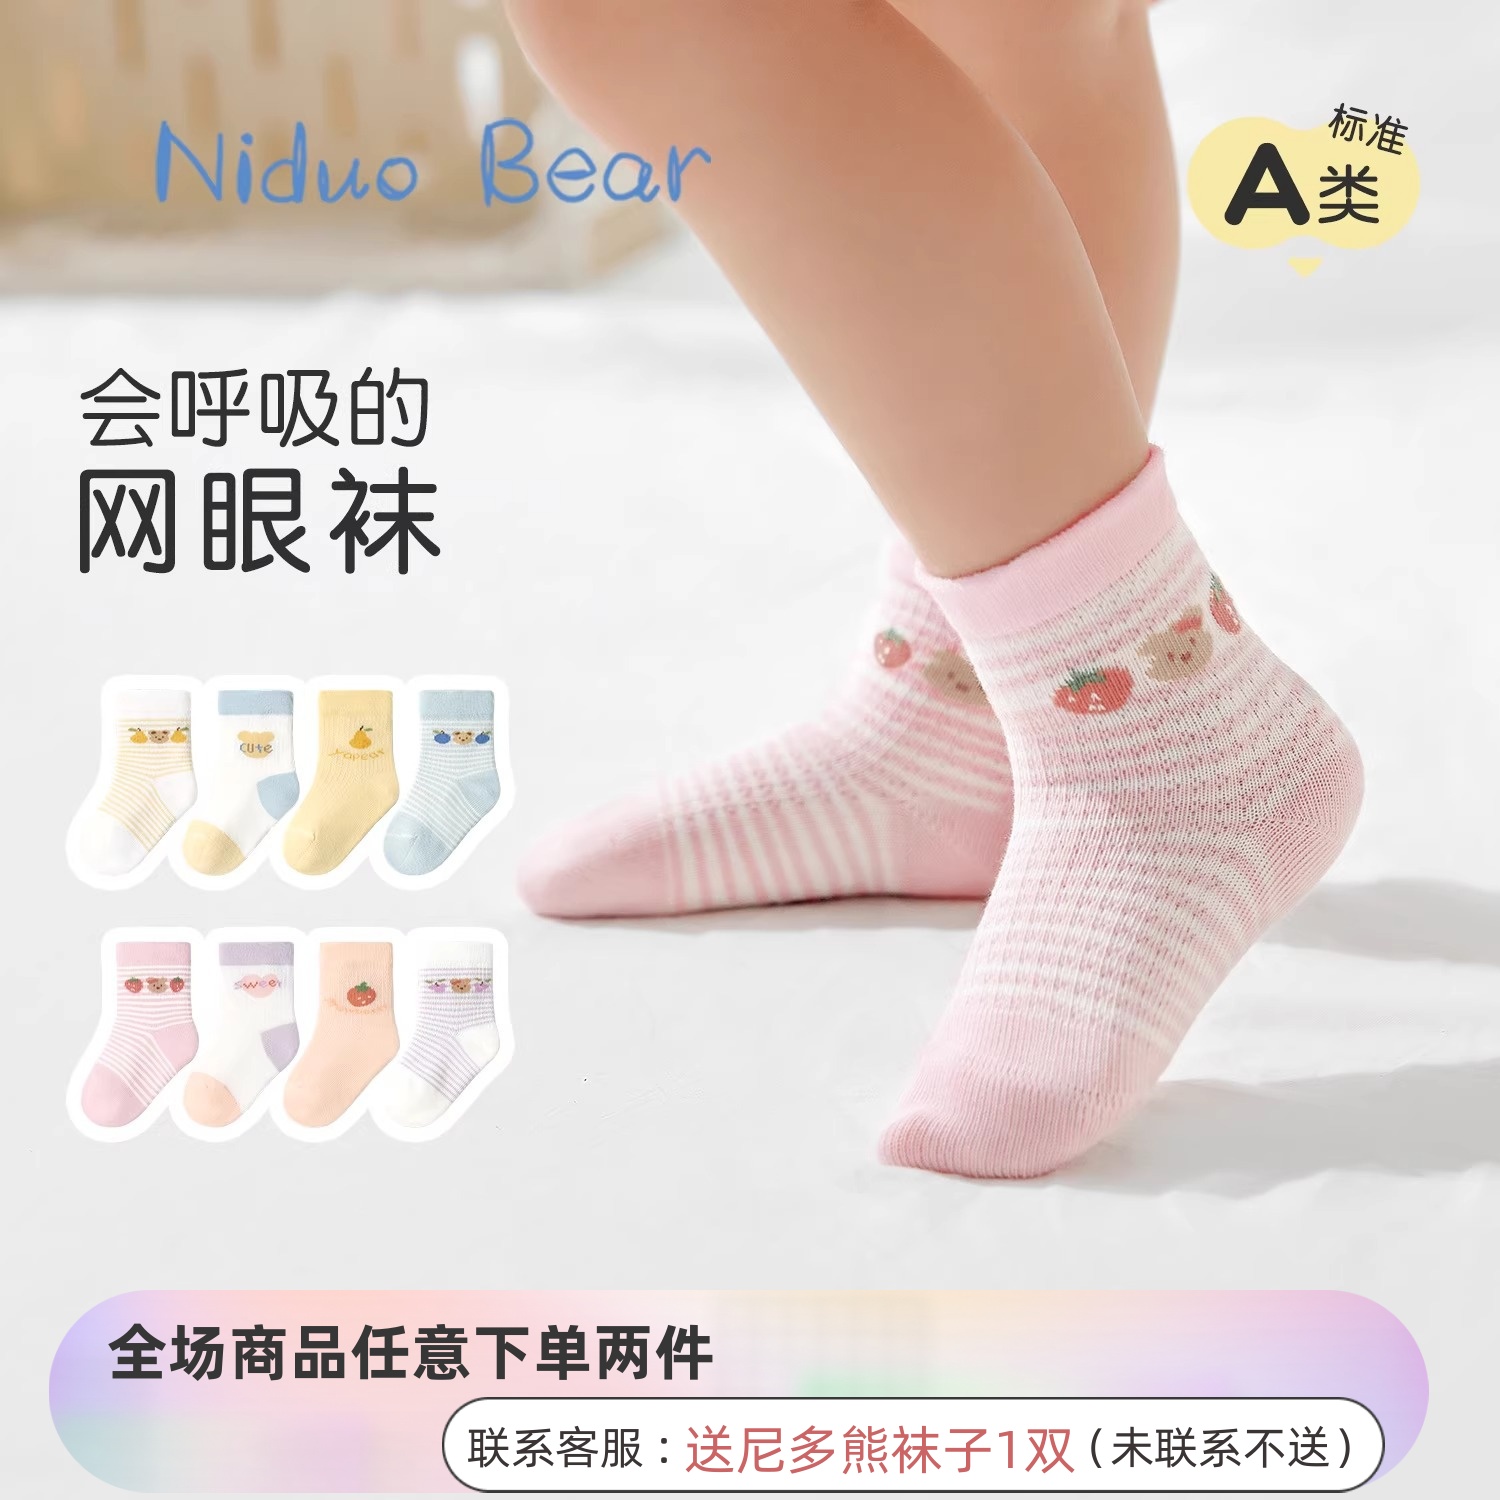 尼多熊婴儿袜子夏季薄款儿童棉袜男女宝宝透气网眼袜无骨新生儿袜